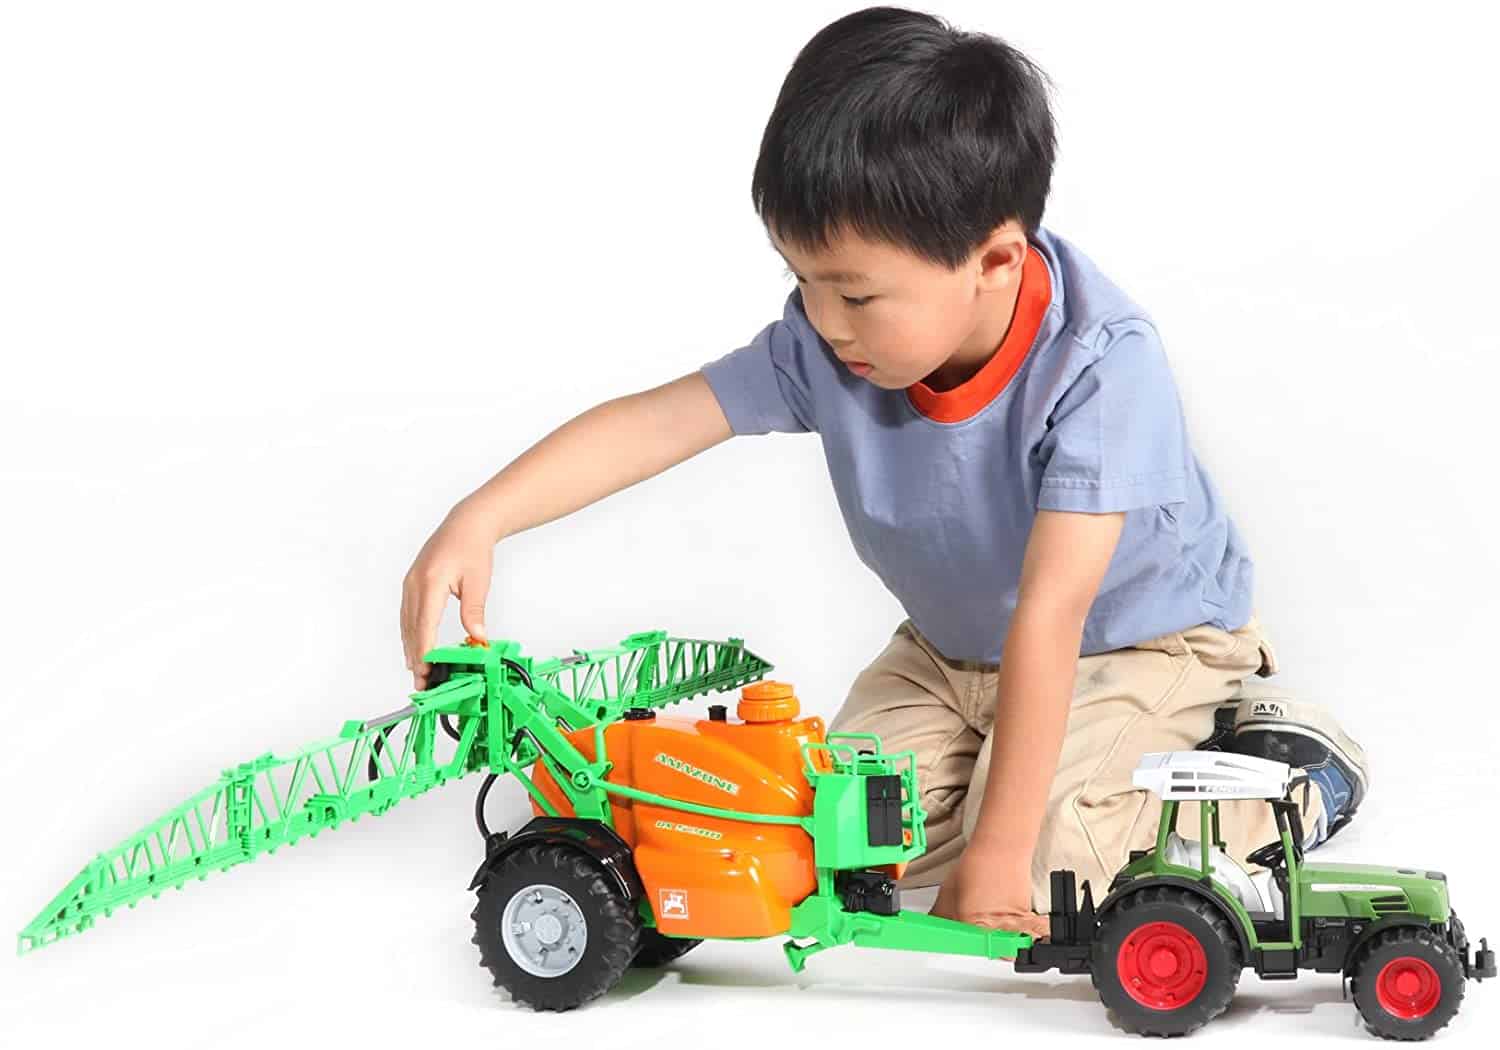 Bruder Traktor Zubehör hinten Hydraulische Arm & Grab Kinder Bauernhof Spielzeug Modell 1:16 